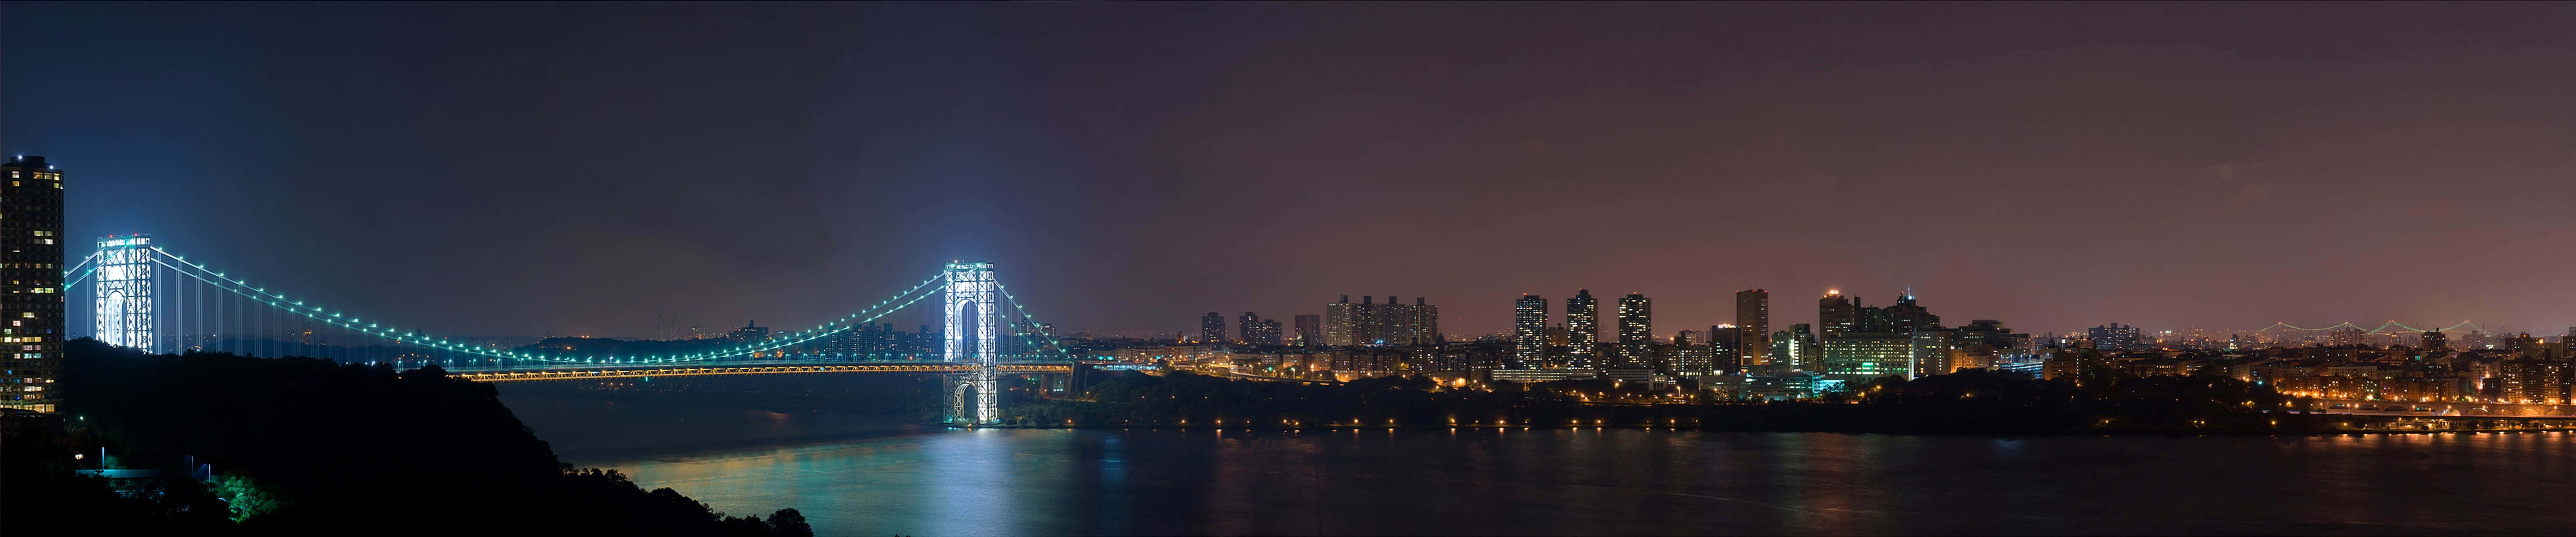 Impresionantefondo De Pantalla Para Monitor Del Puente George Washington En El Pixel 3